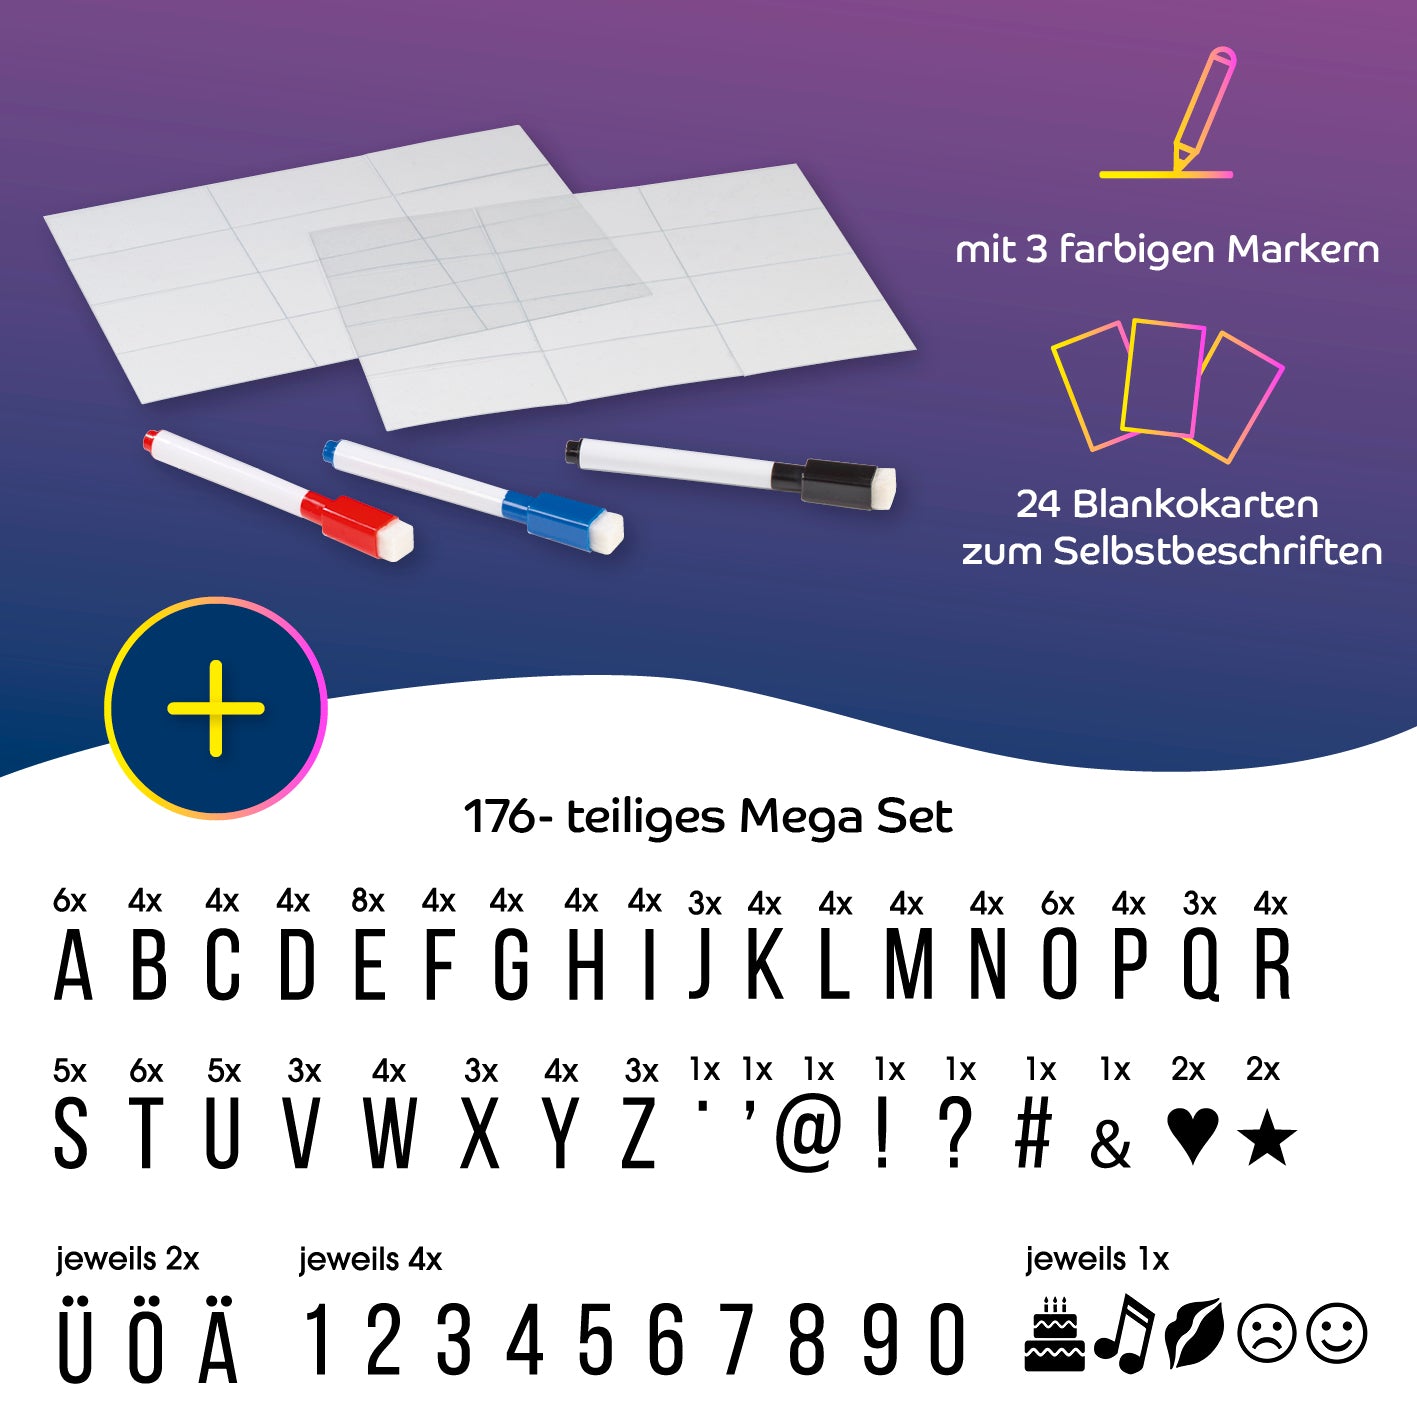 LED-Leuchtkasten A4 mit 173 Buchstaben, Zahlen & Symbolen inkl. Schreib-Set (3 Stifte & 20 blanko Karten)